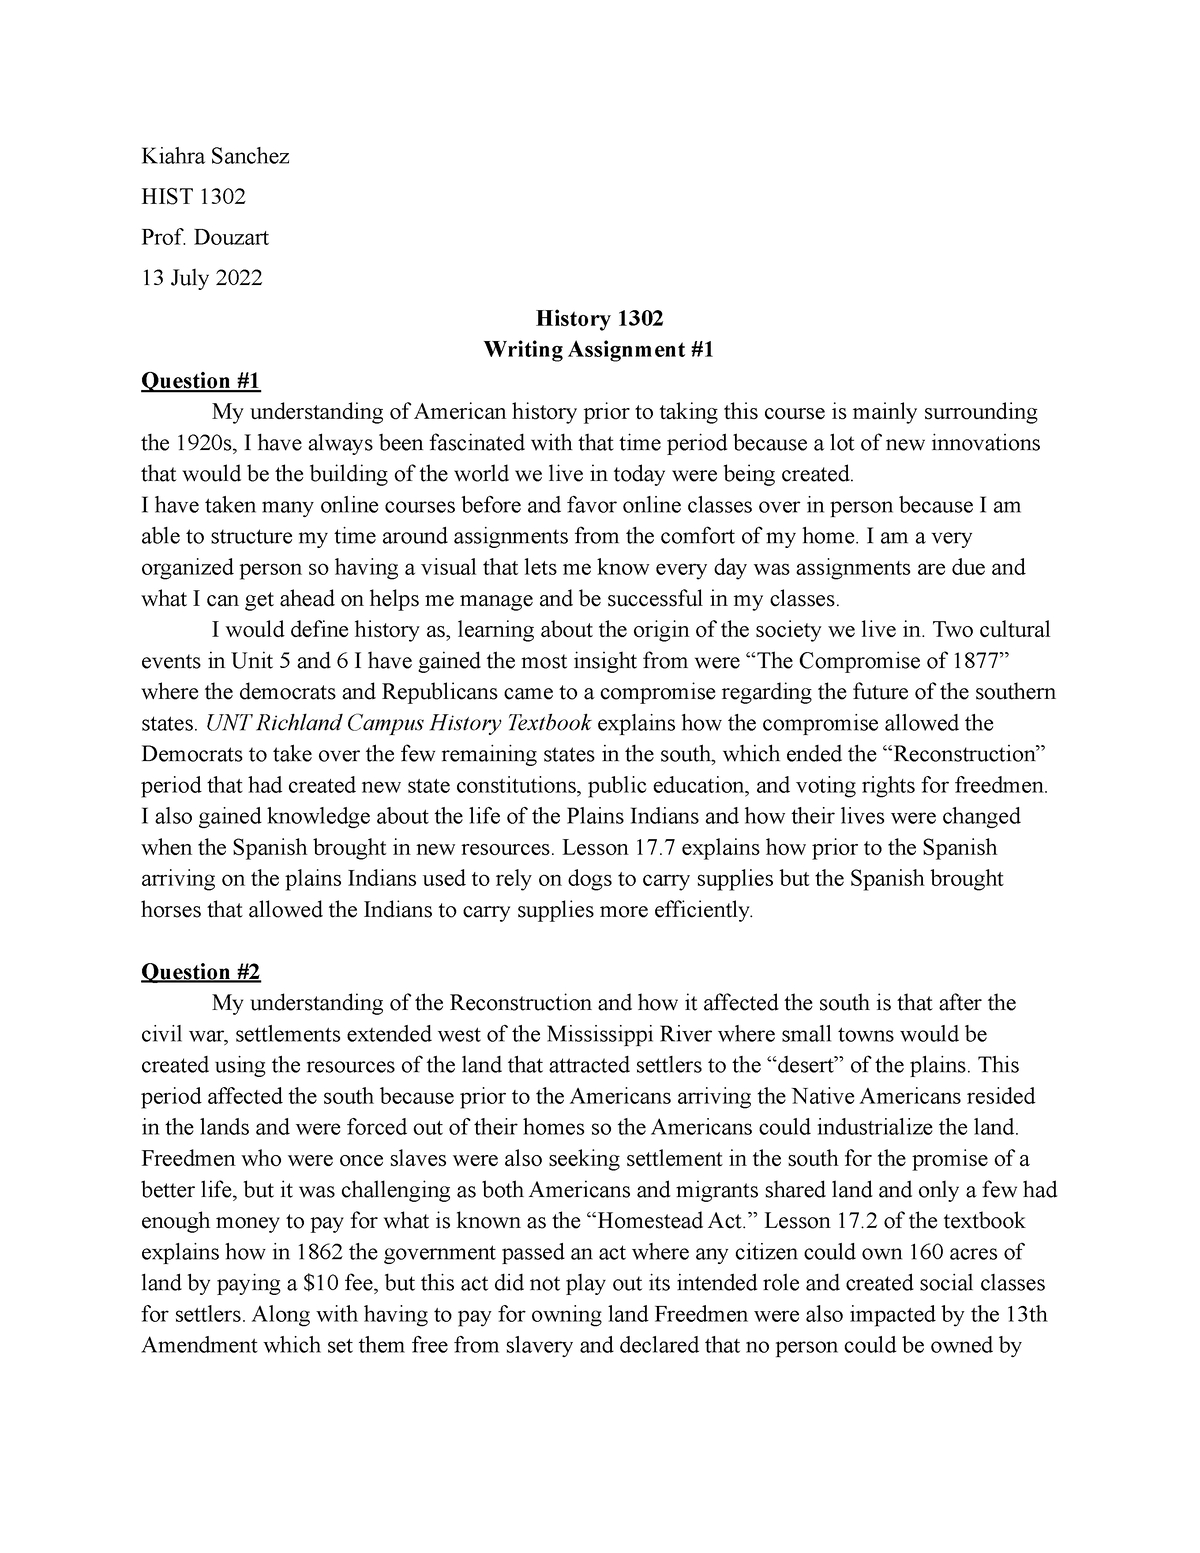 history 1302 final exam essay questions